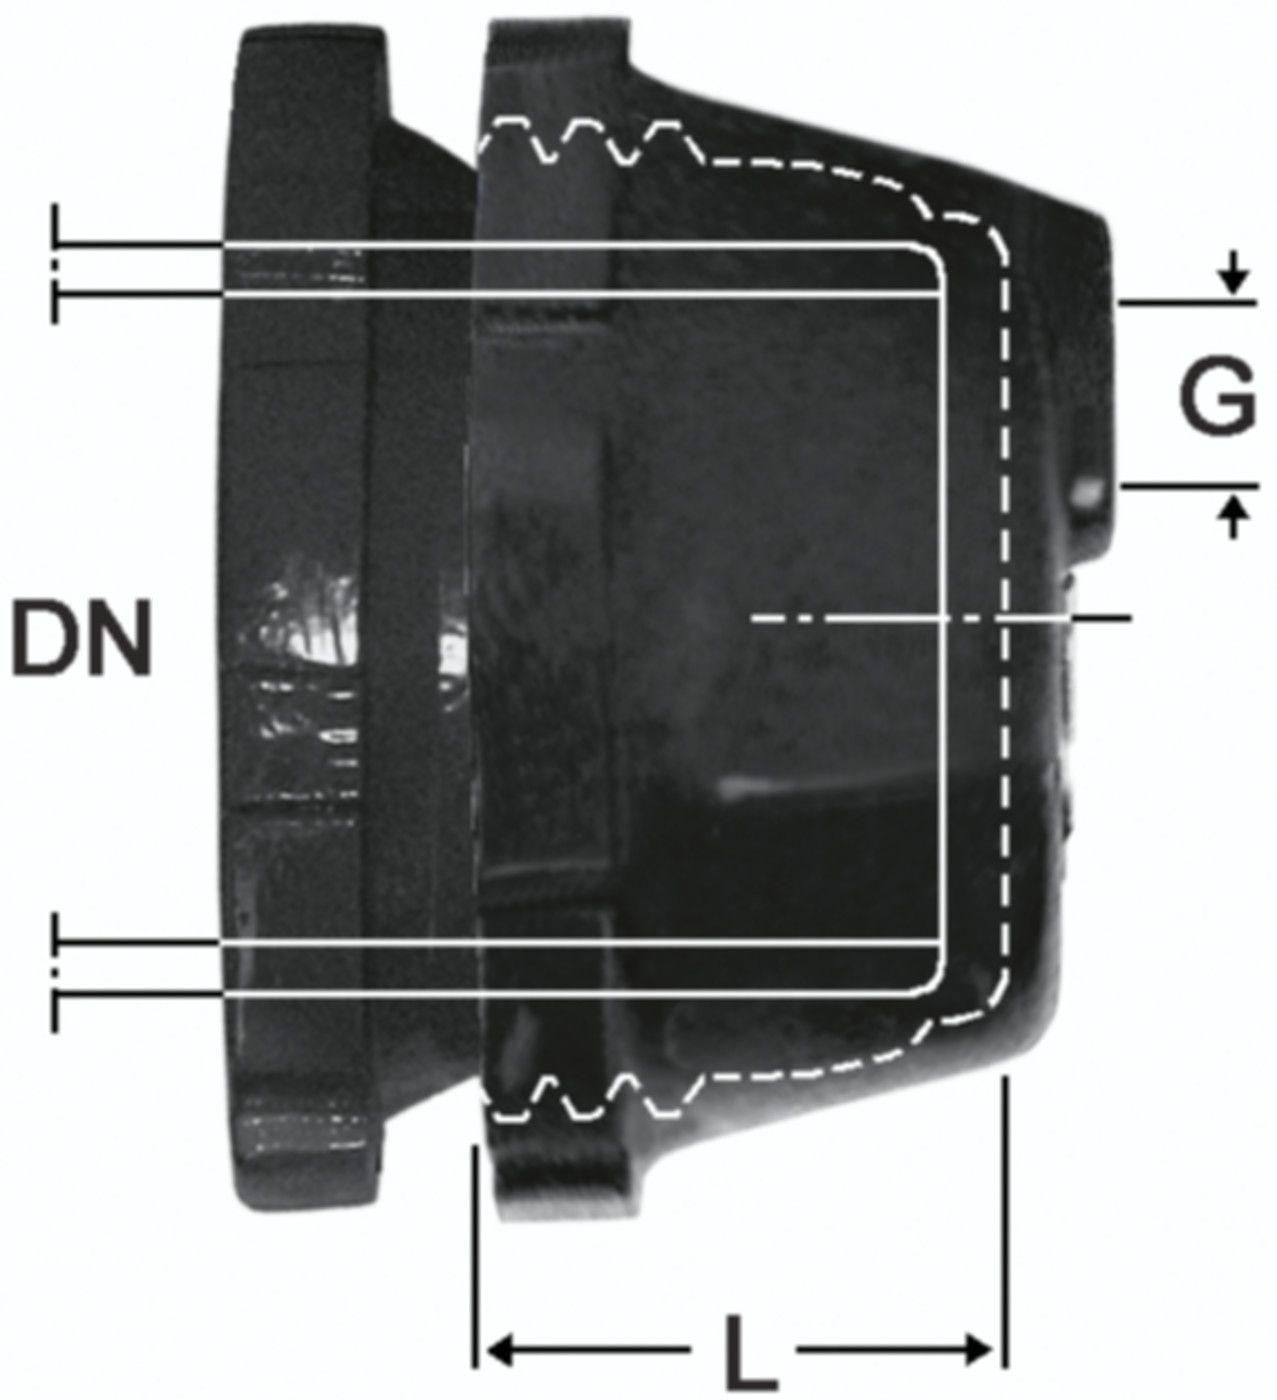 SM-Verschlusskappe Fig. 2395 DN 125 - 1 1/2" - Von Roll Schraubmuffenformstücke